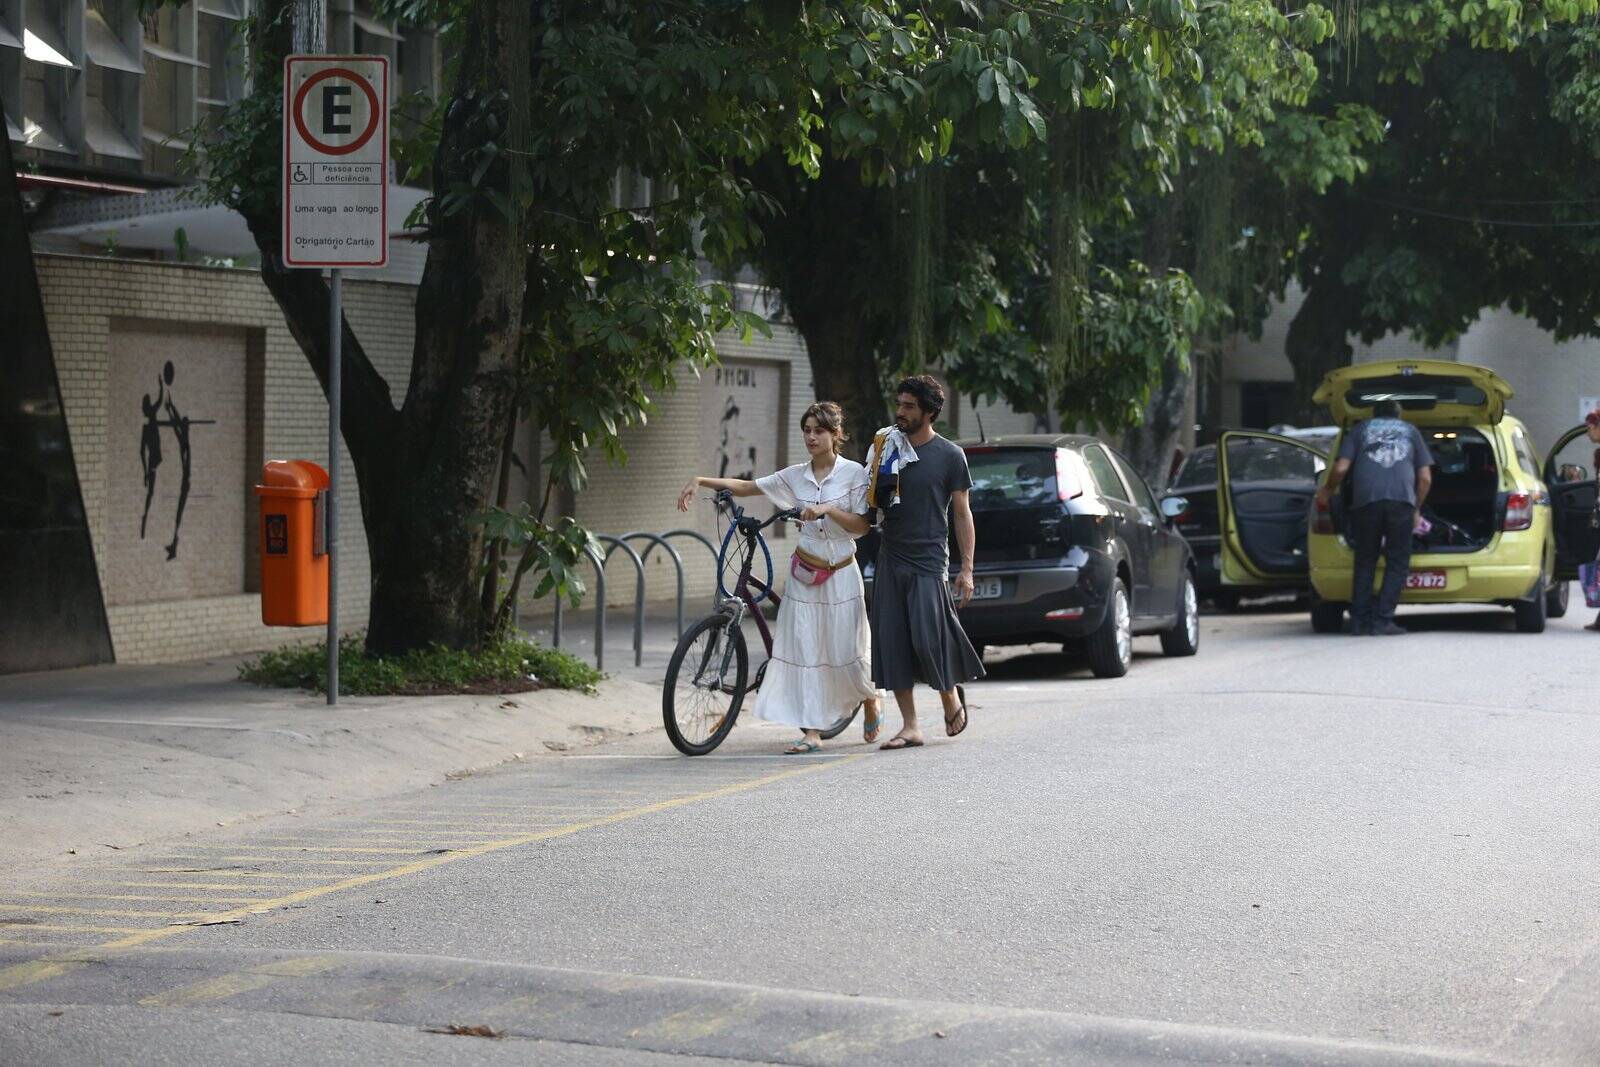 Luisa Arraes e Caio Blat em passeio no Rio de Janeiro. Foto: AGNEWS/Rodrigo Adao